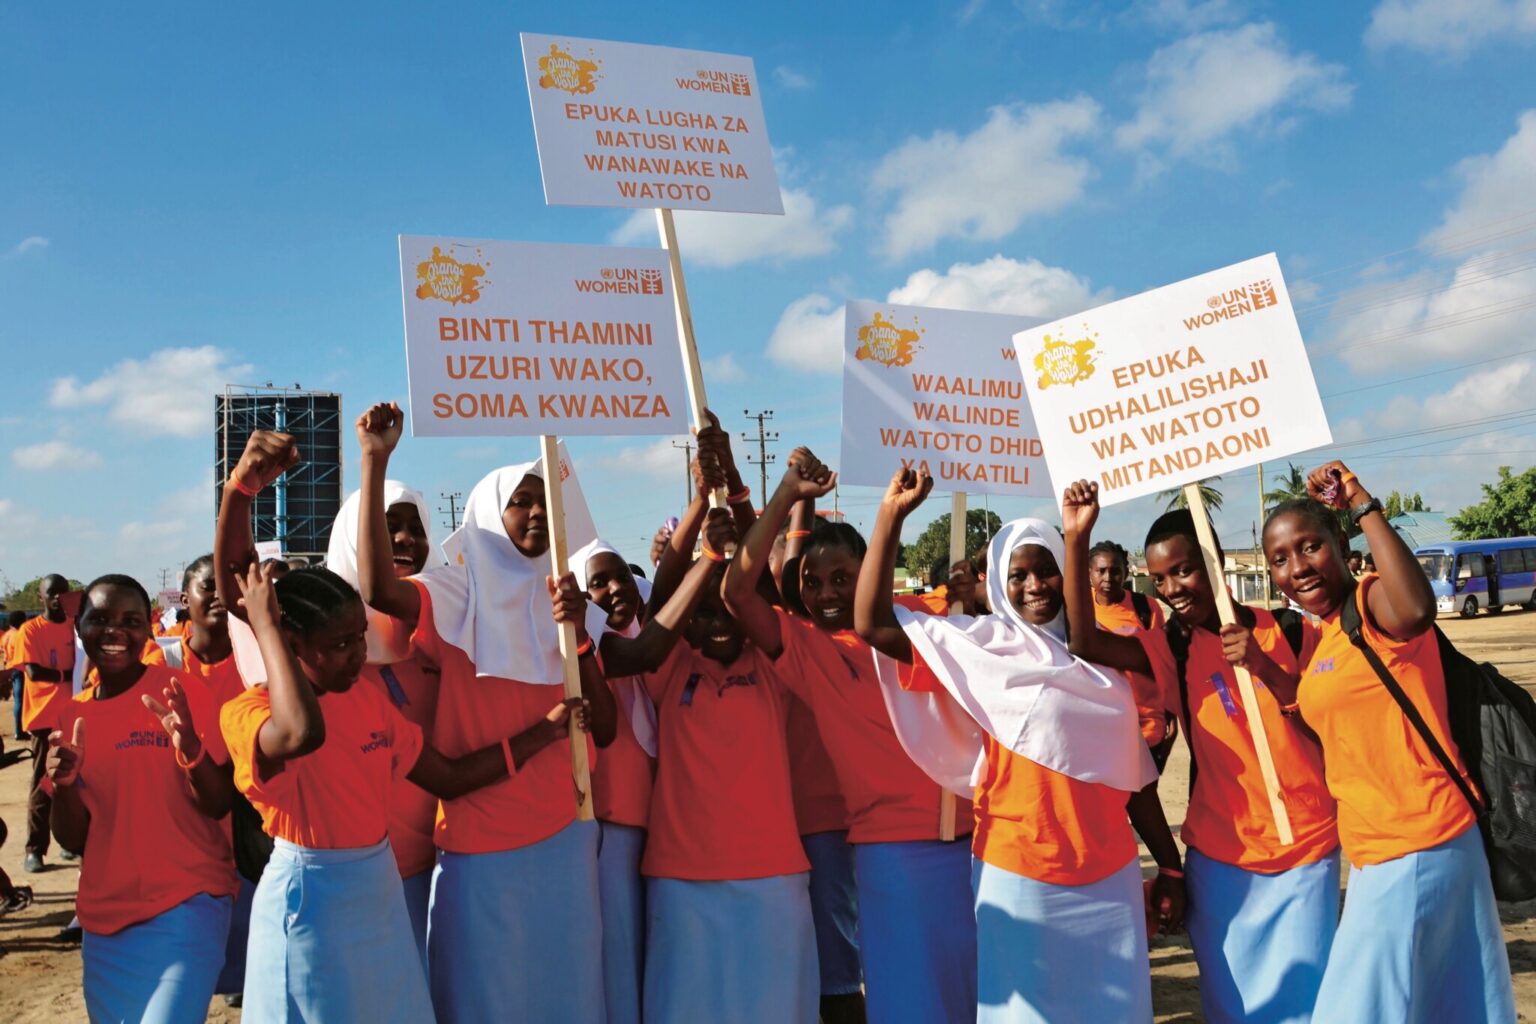 暴力のない未来を願う「Orange the World」。女性に対する暴力撤廃の国際デーである11月25日に始まり、12月10日の国際人権デーまでの16日間にわたって開催されるキャンペーン。暴力のない明るい未来を象徴するオレンジ色を使って連帯を示している。